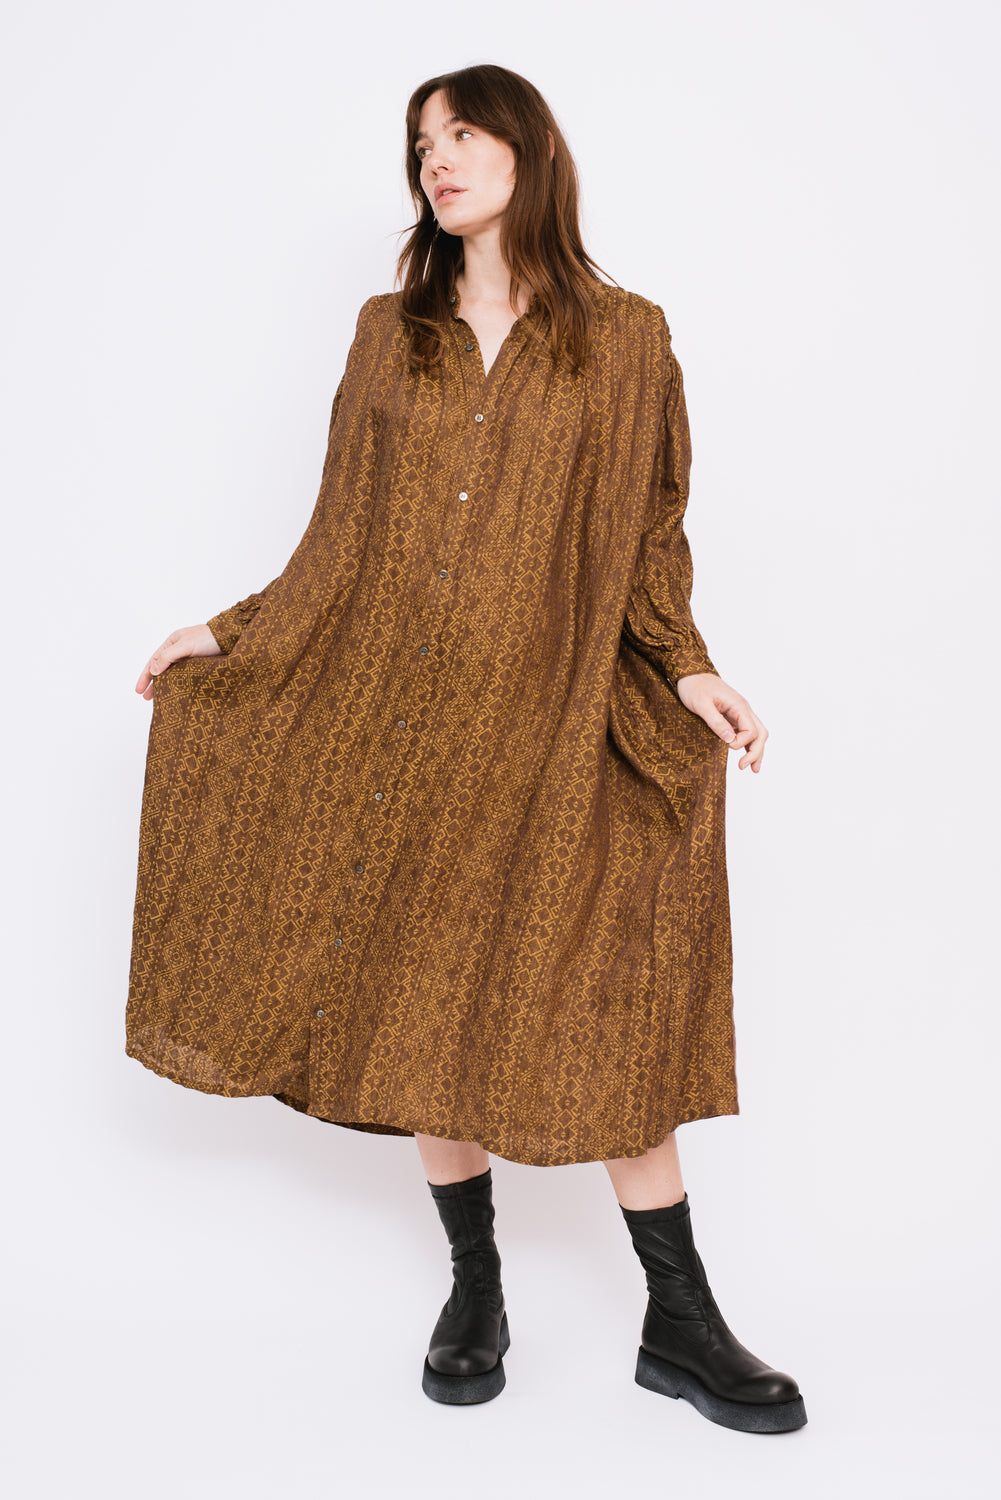 AZTECA JACQUARD Woven Linen Dress Camel